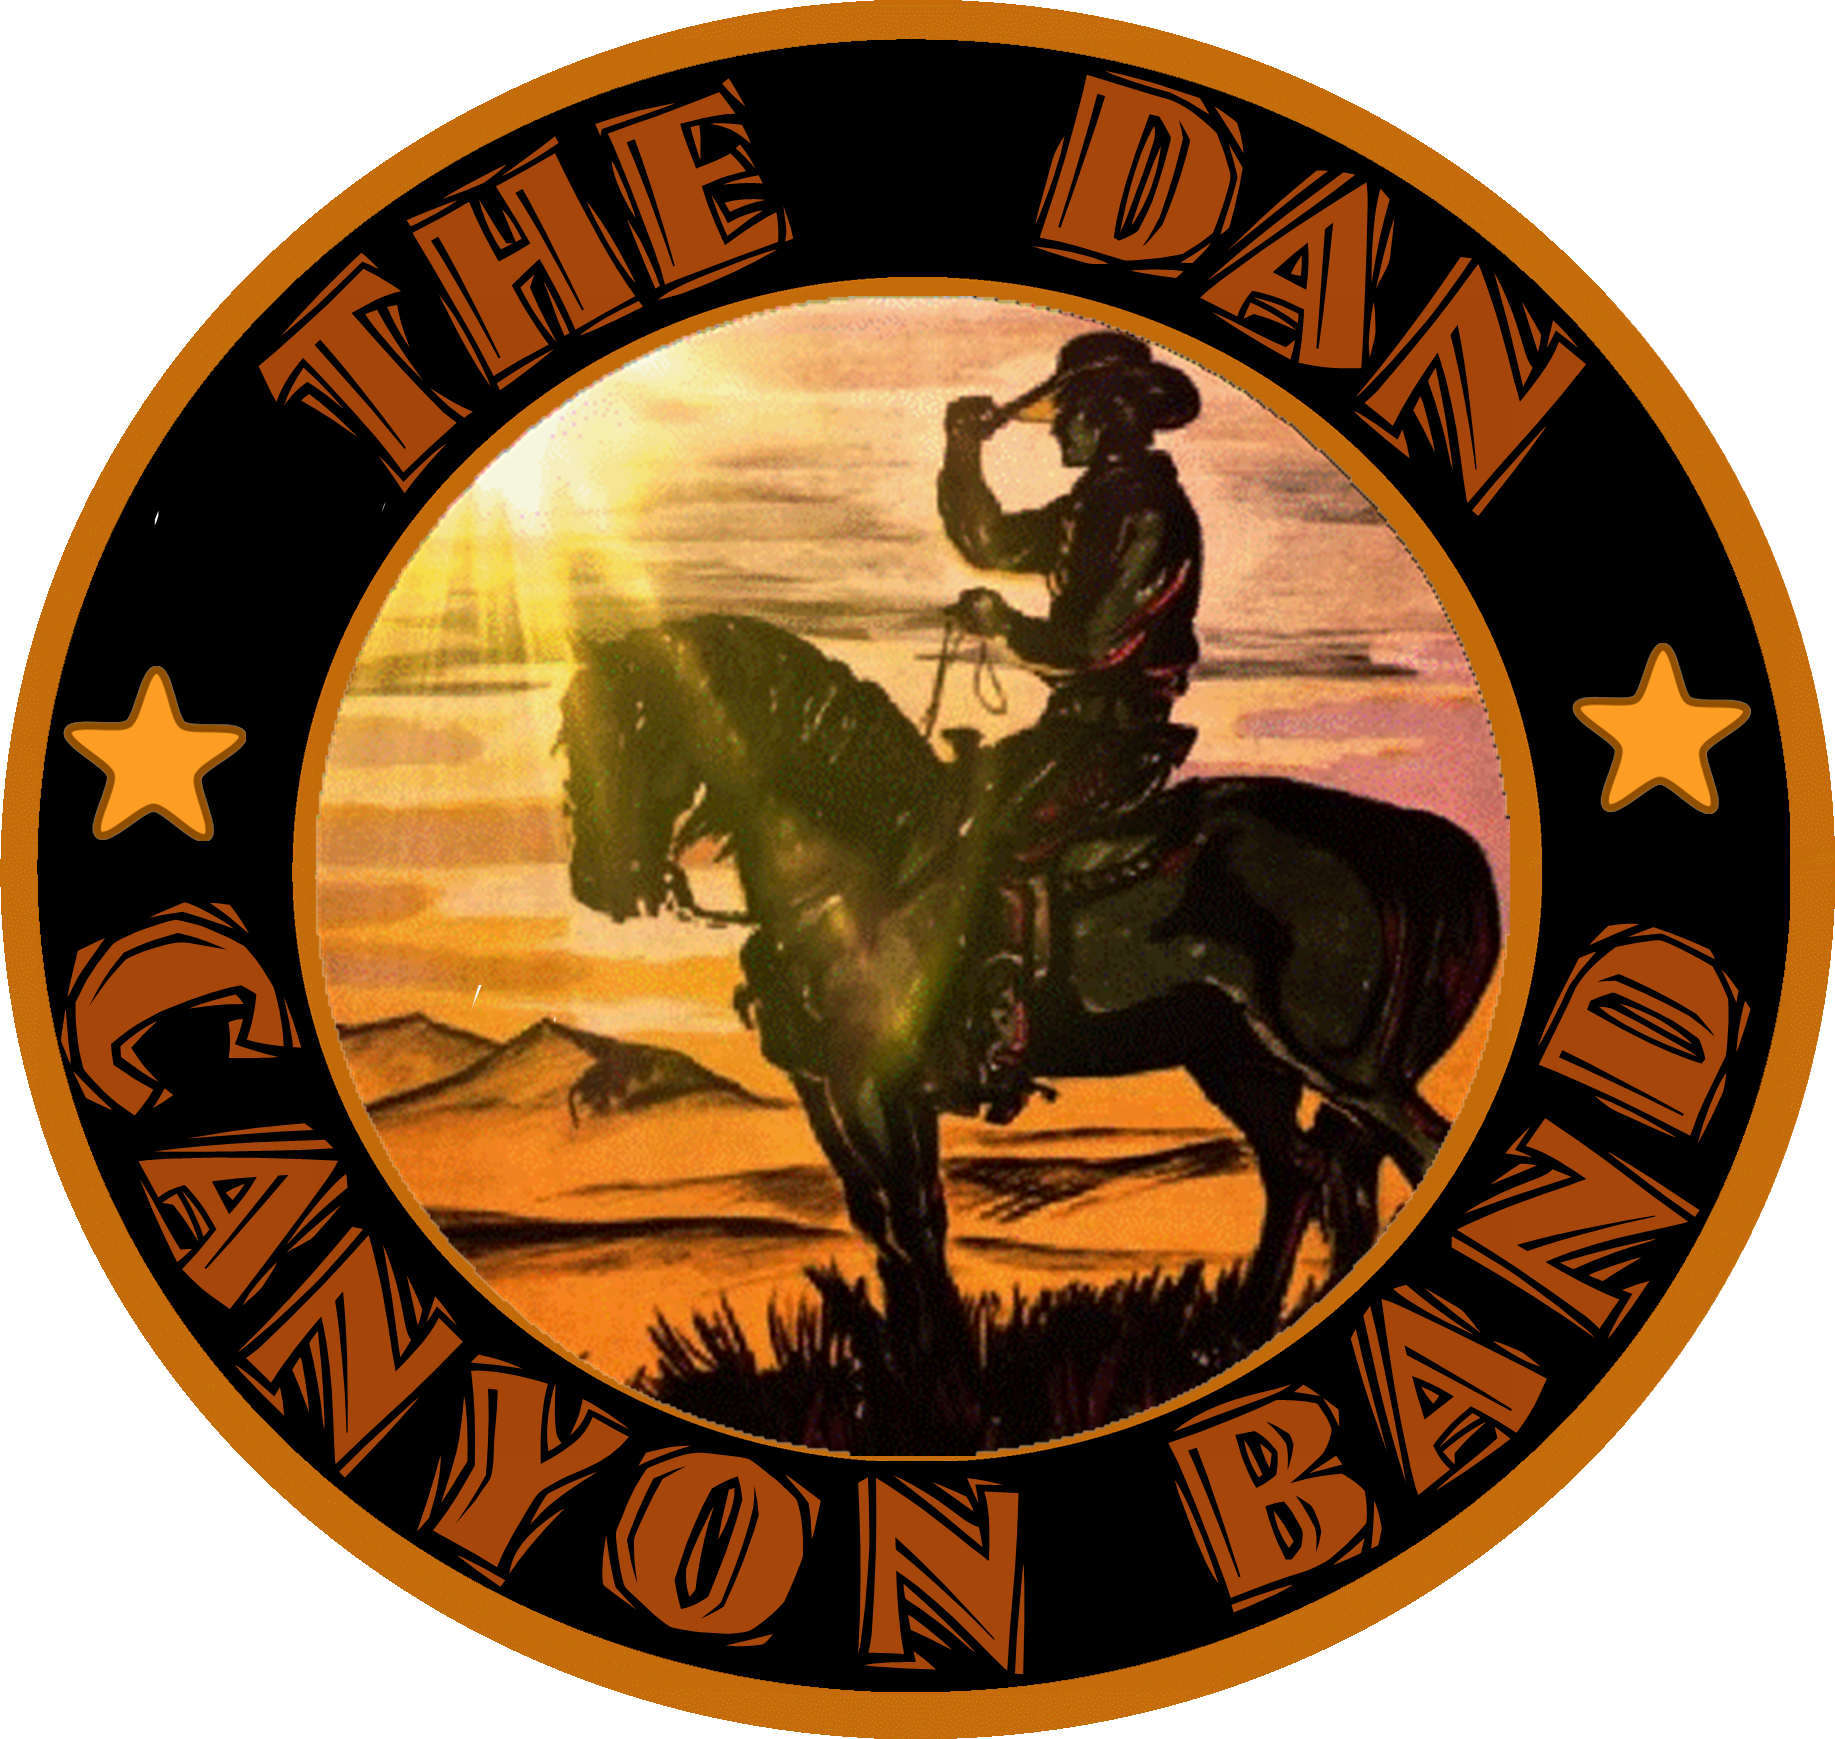 The Dan Canyon Band